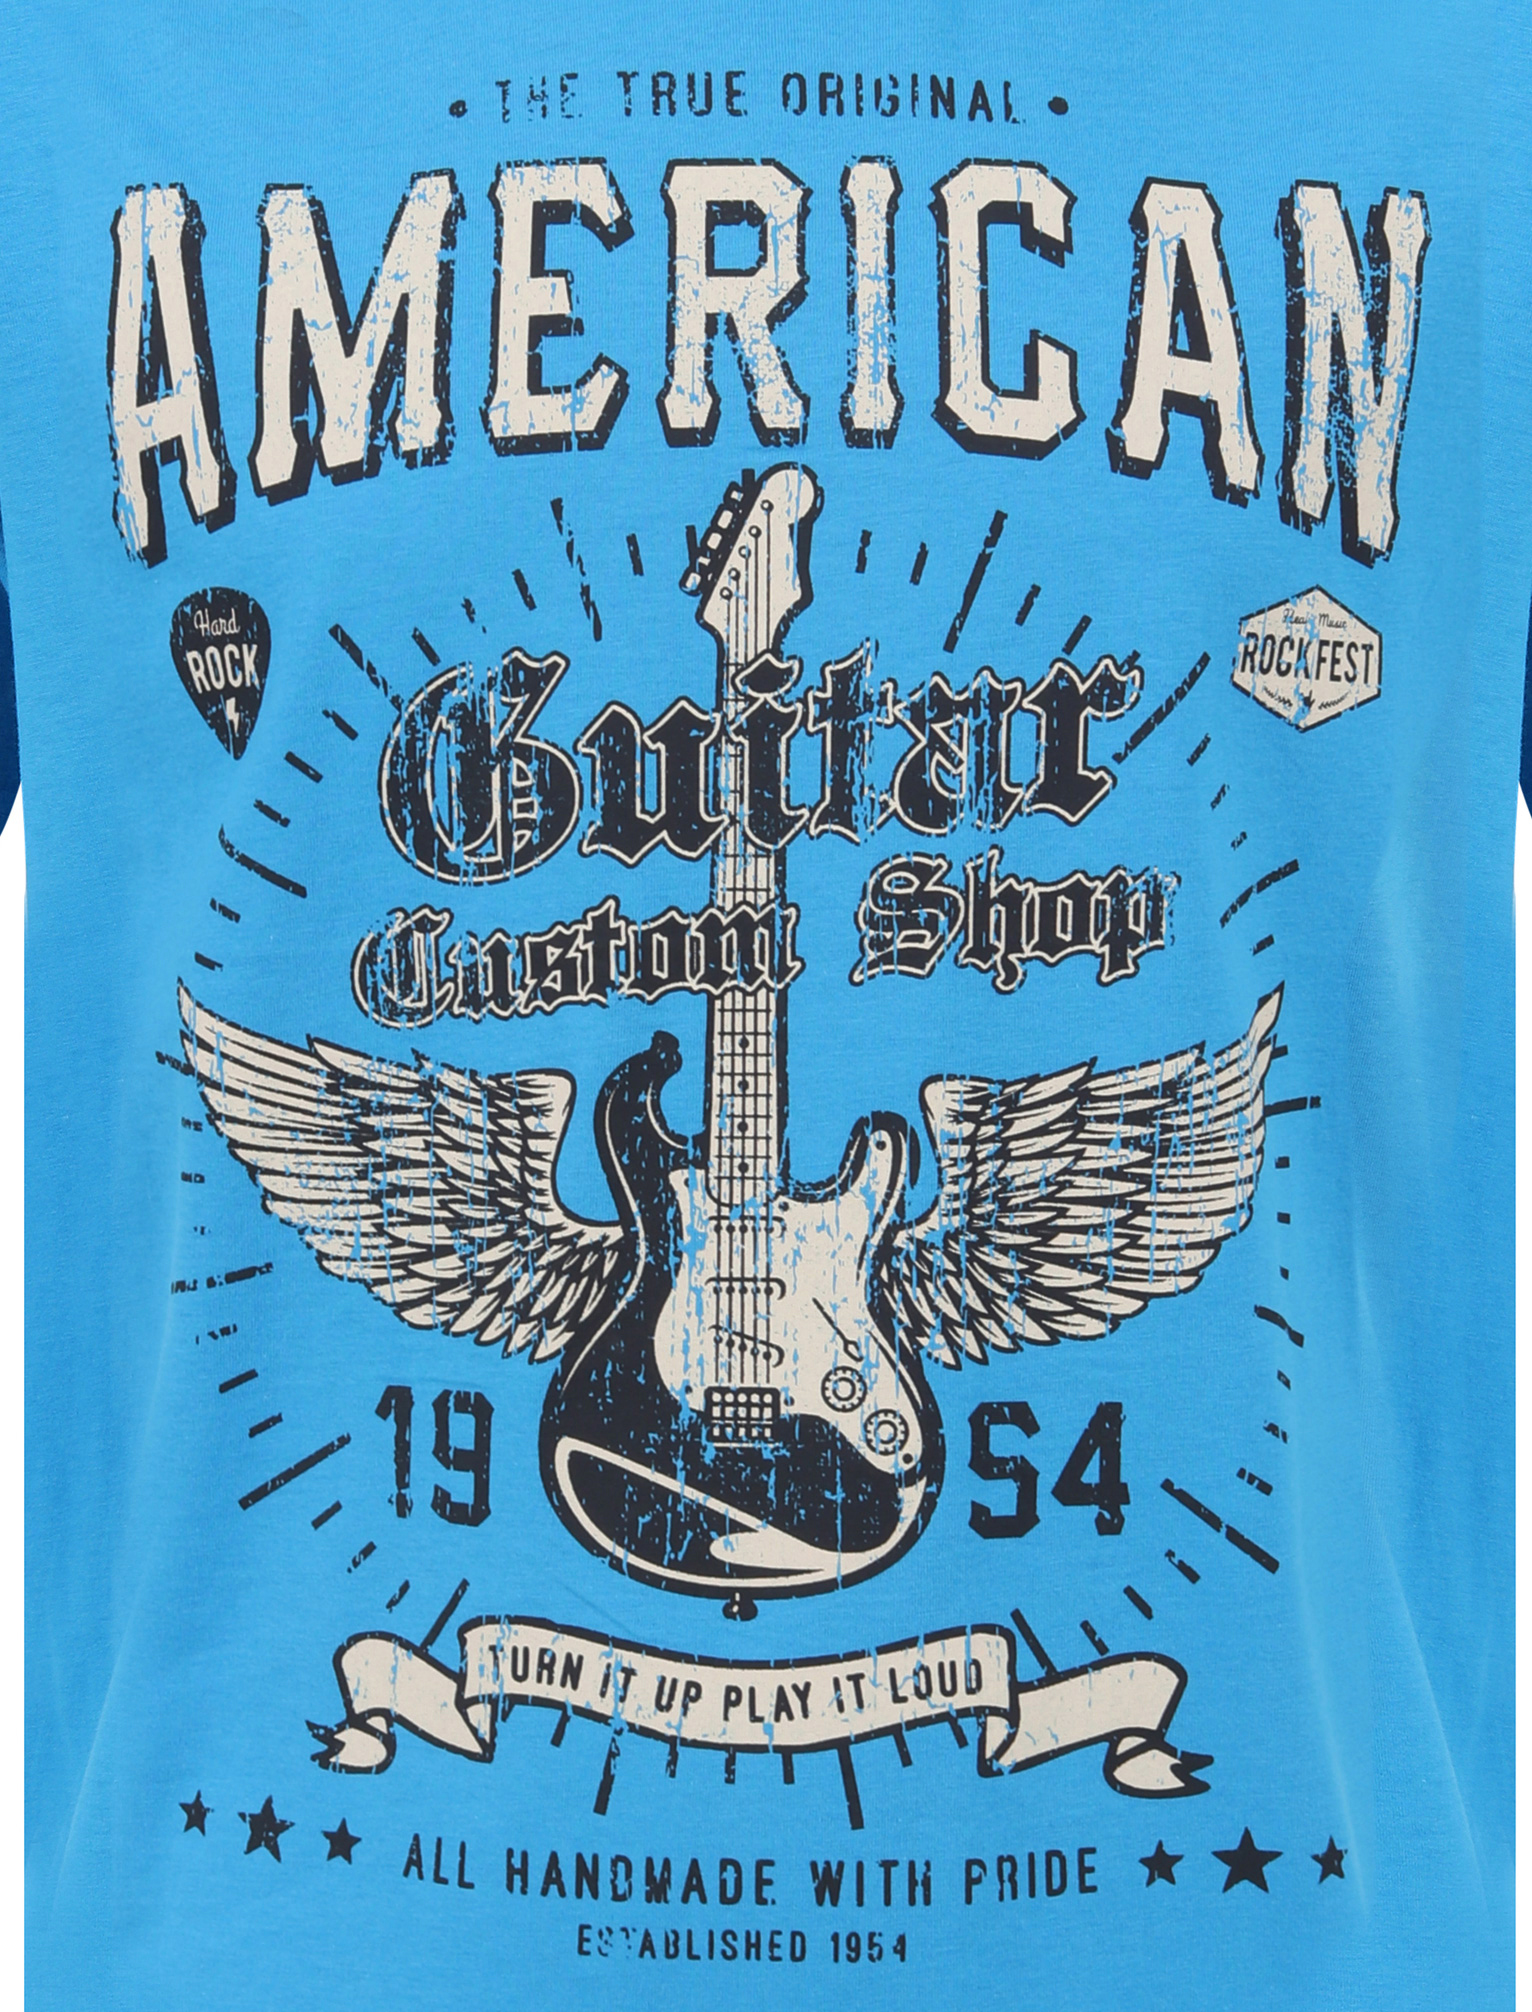 South Shore Vintage American Guitar Graphic pour homme à manches courtes T-Shirt-Bleu